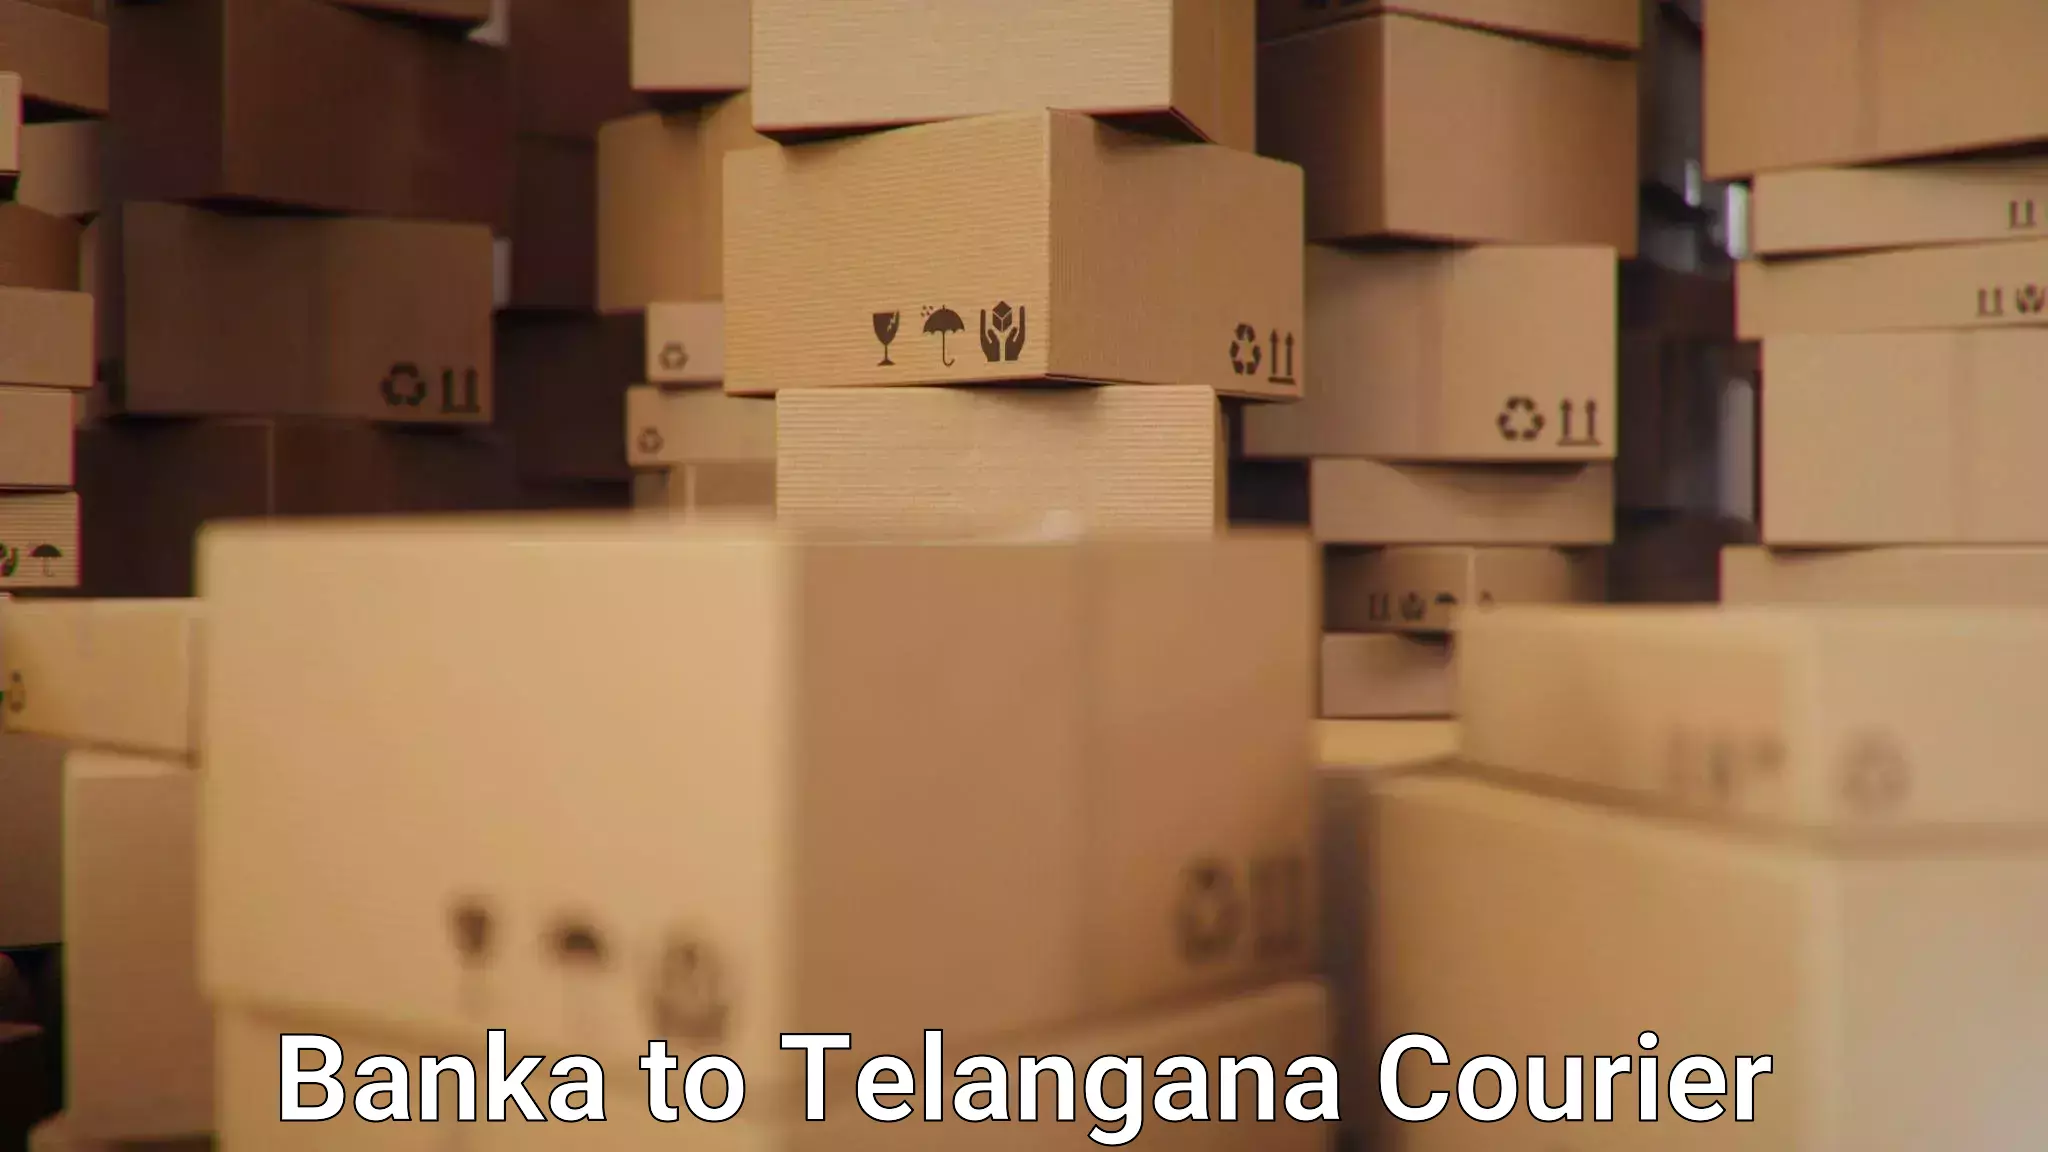 Digital courier platforms Banka to Thirumalagiri